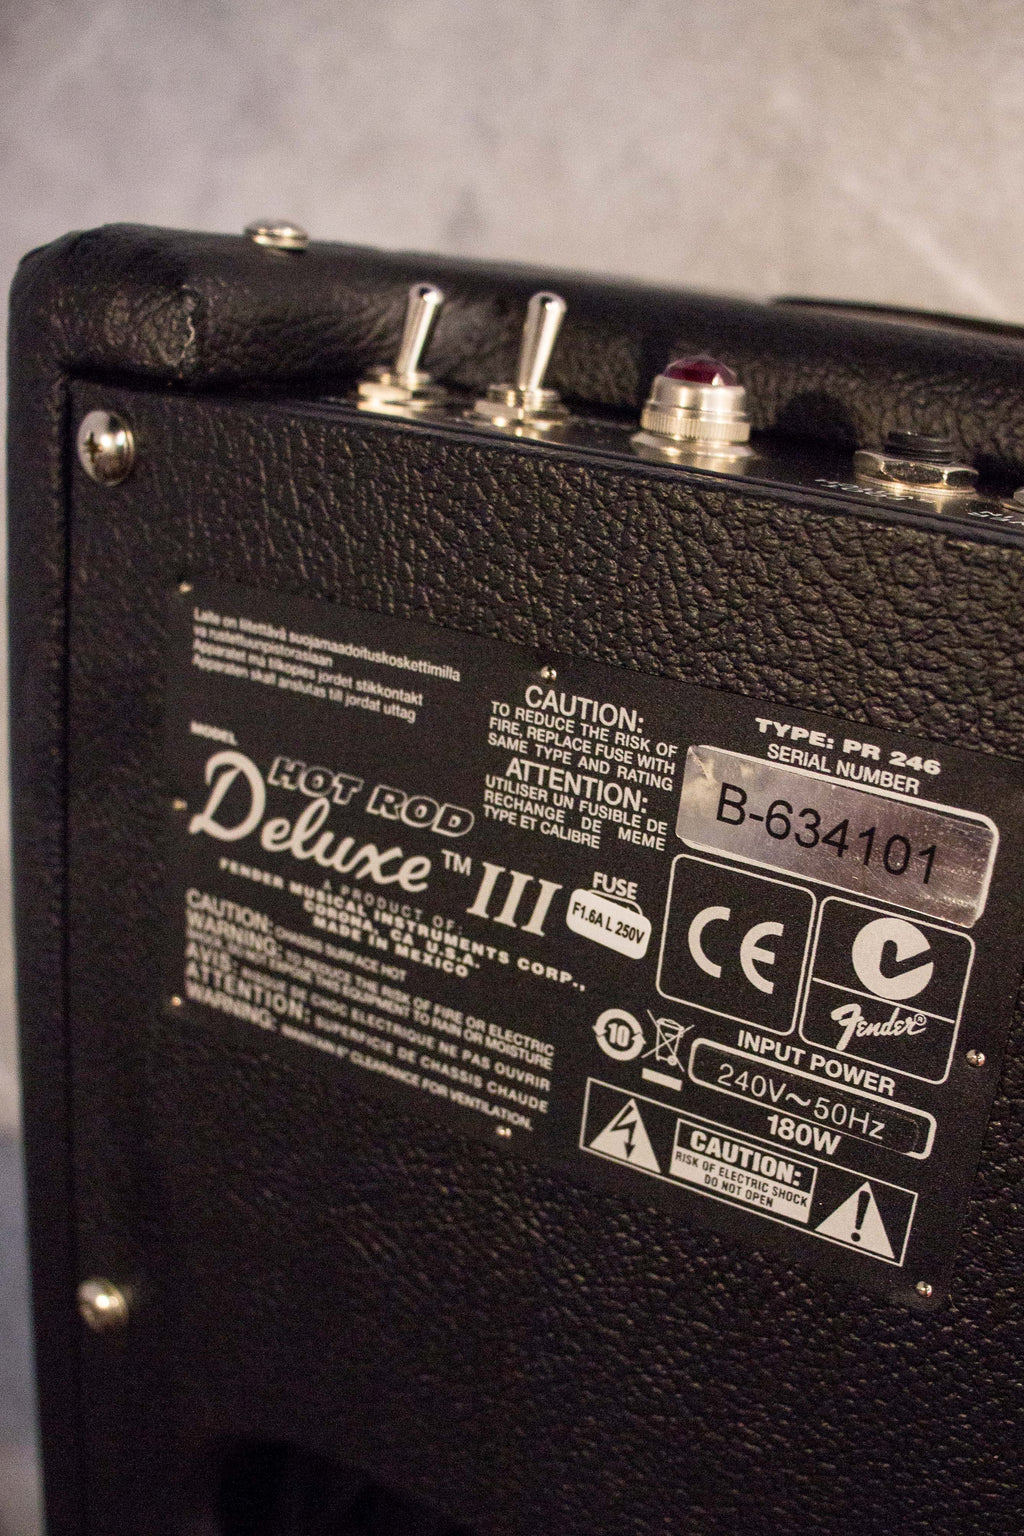 Fender Hot Rod Deluxe III 40W 1x12" Combo Amp